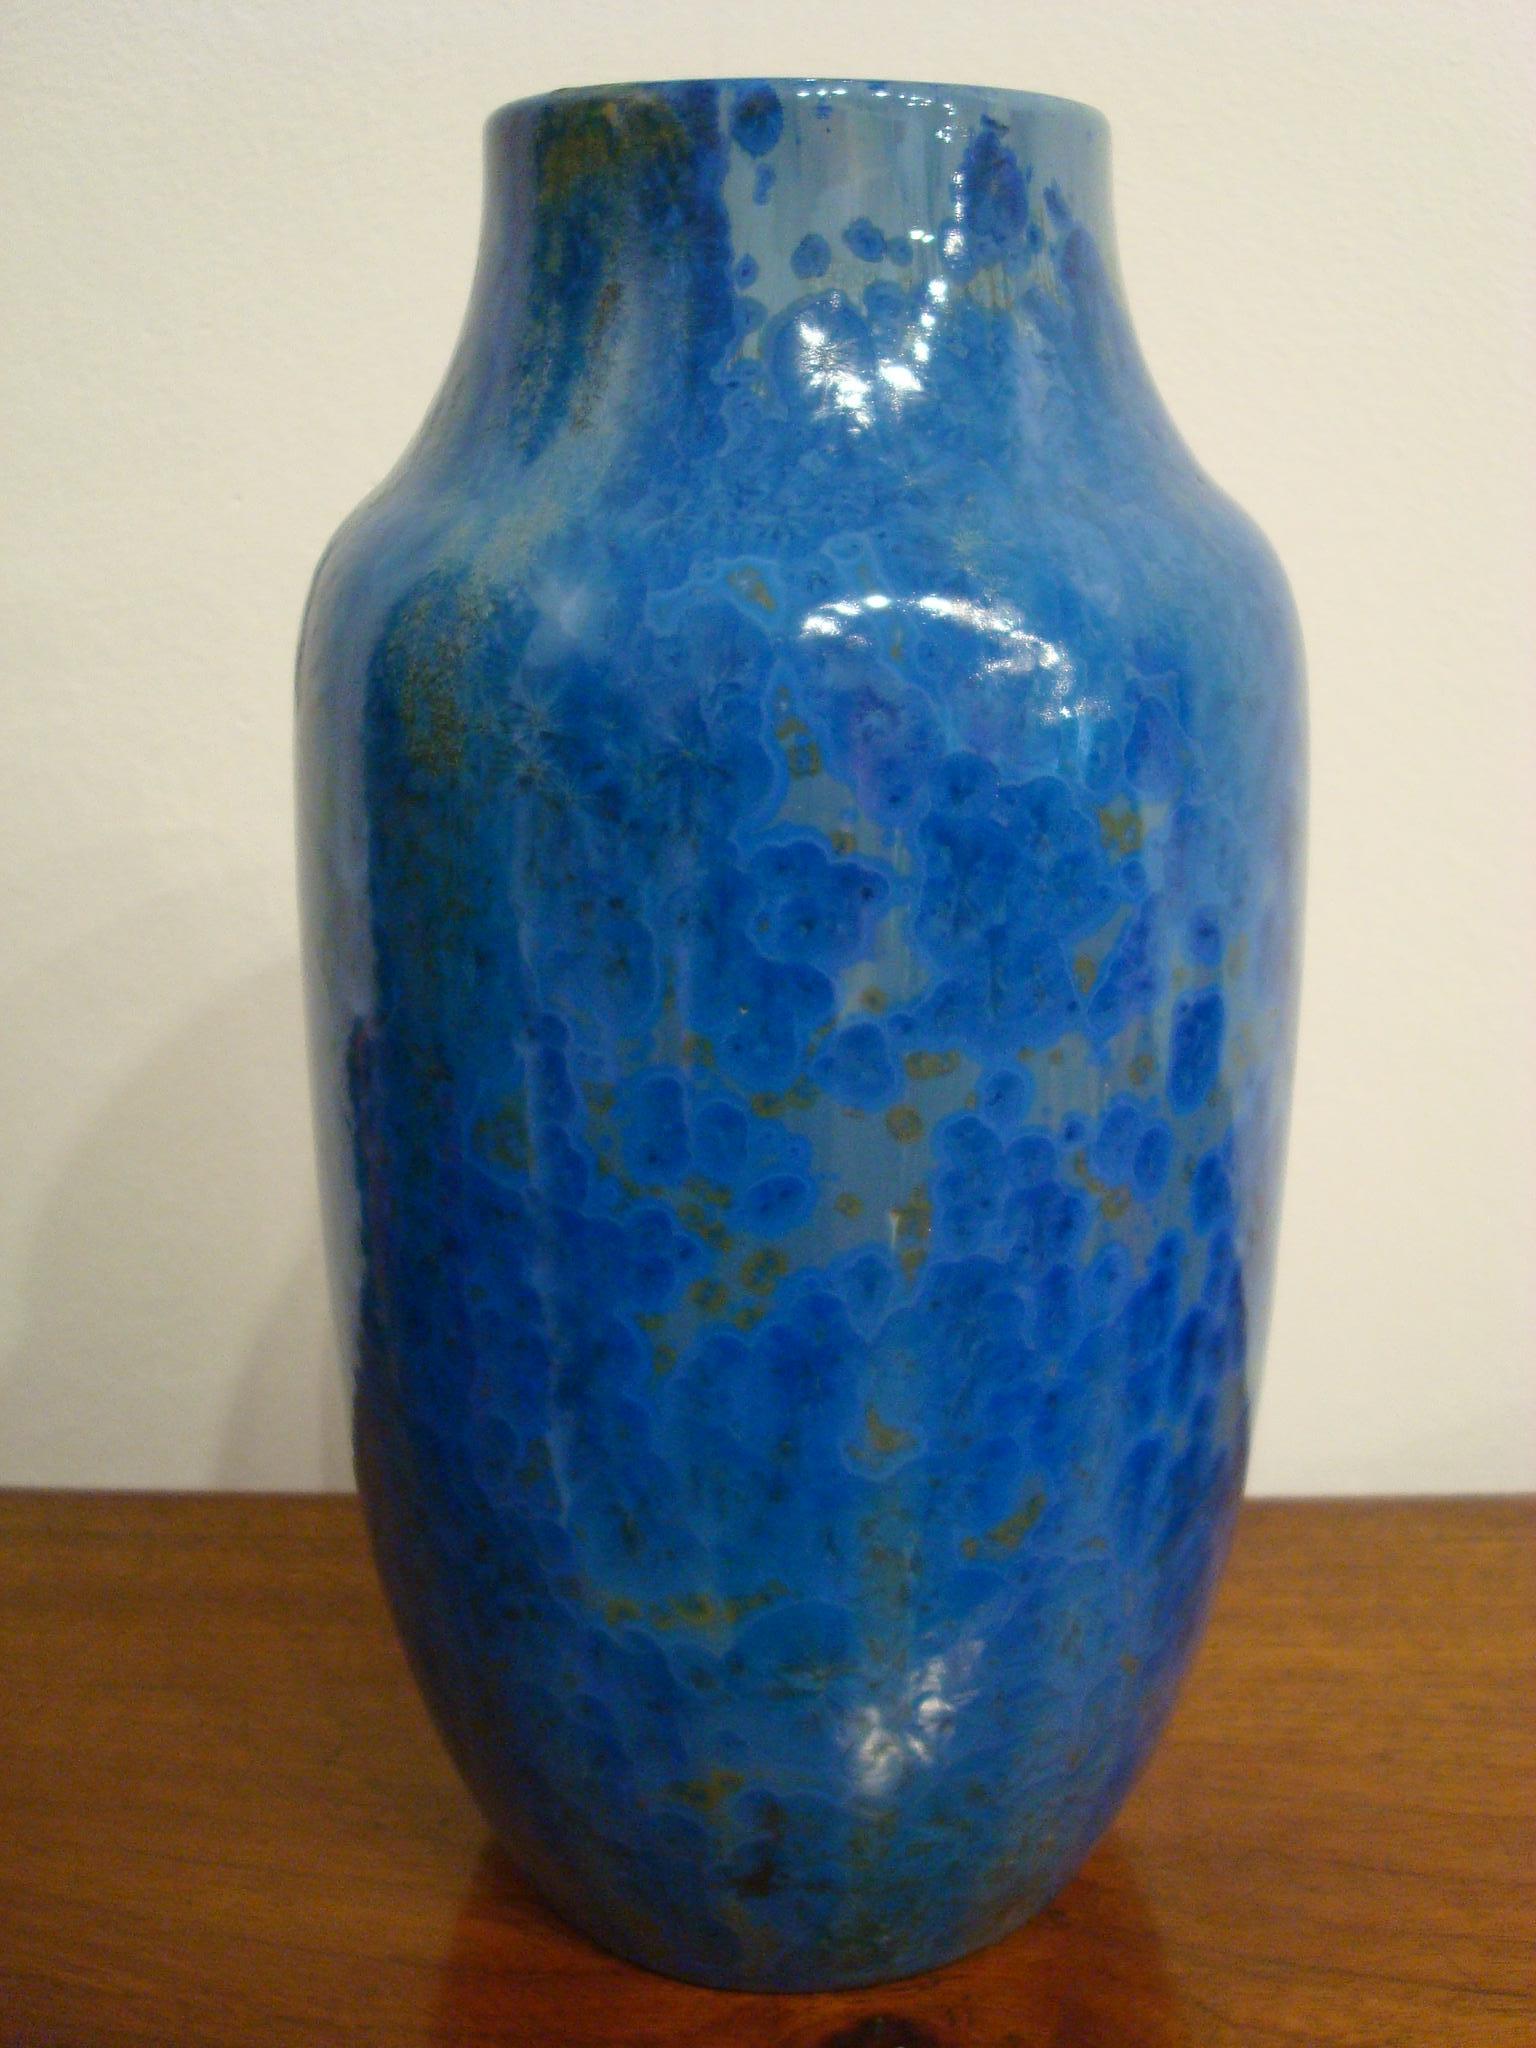 Vase Art nouveau en poterie de Pierrefonds dans les tons bleu, beige et brun, partiellement décoré en glaçures cristallines, marques d'usine estampillées.
France, datant d'environ 1900.